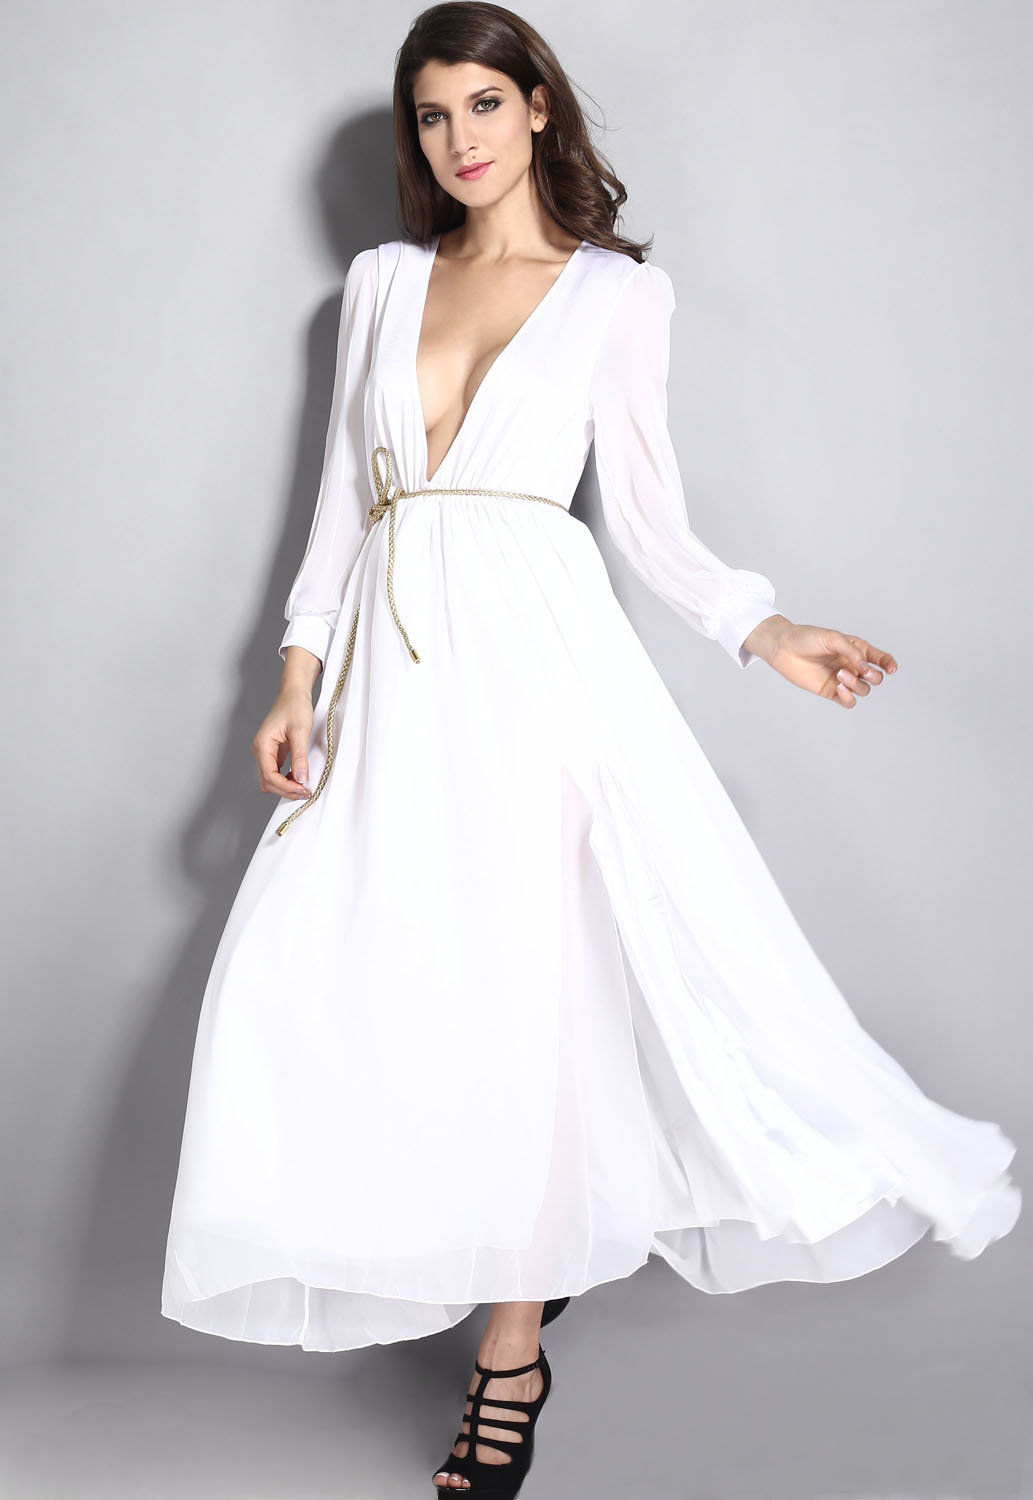 Белое платье: как выбрать, с чем носить, модные фасоны, модели и цвета